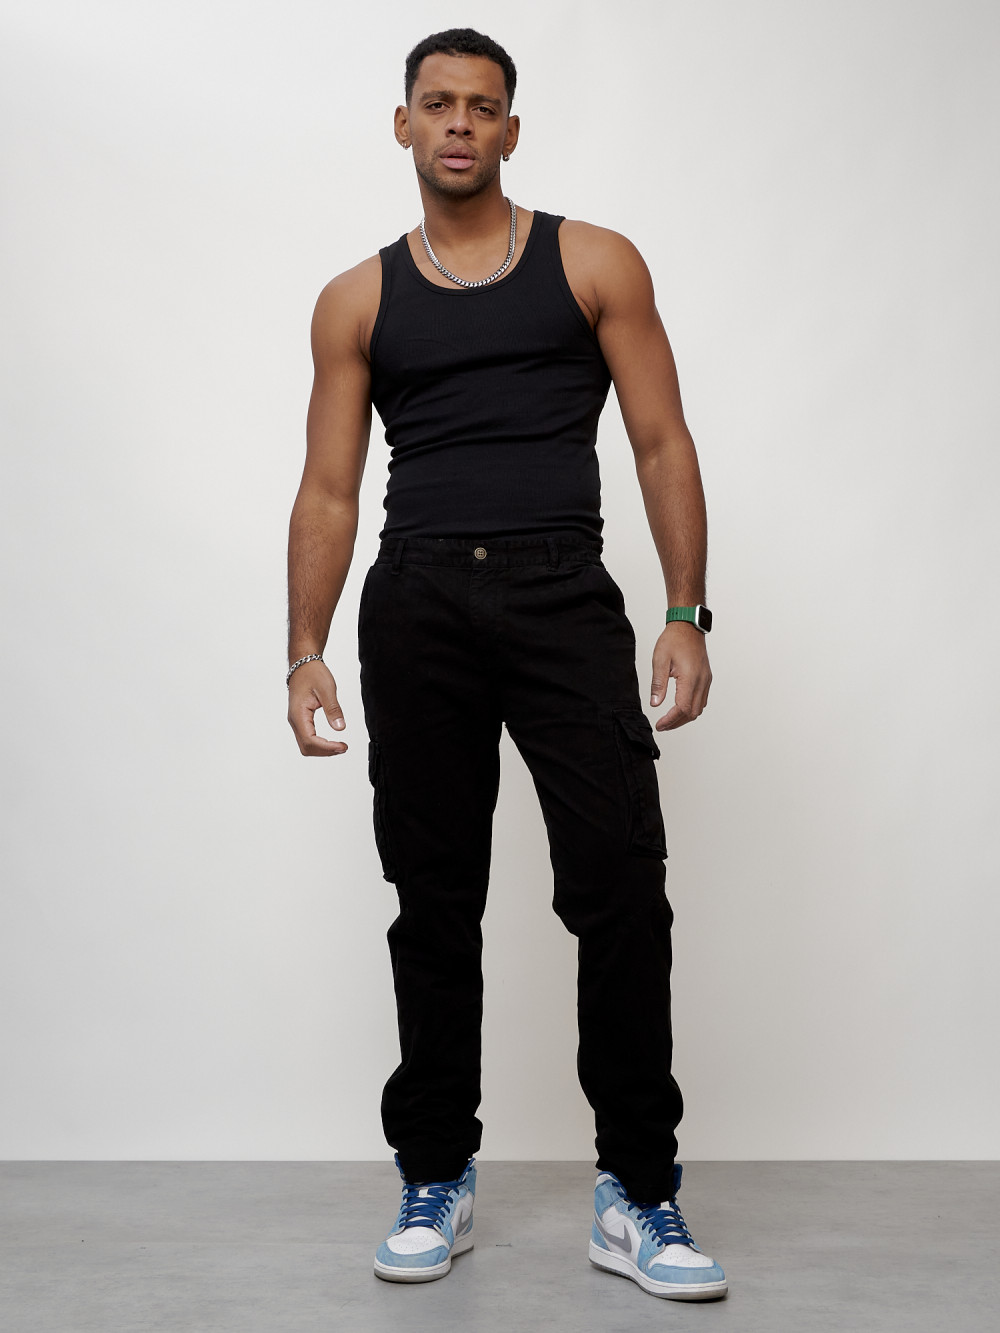 Джинсы карго мужские с накладными карманами черного цвета 2404Ch